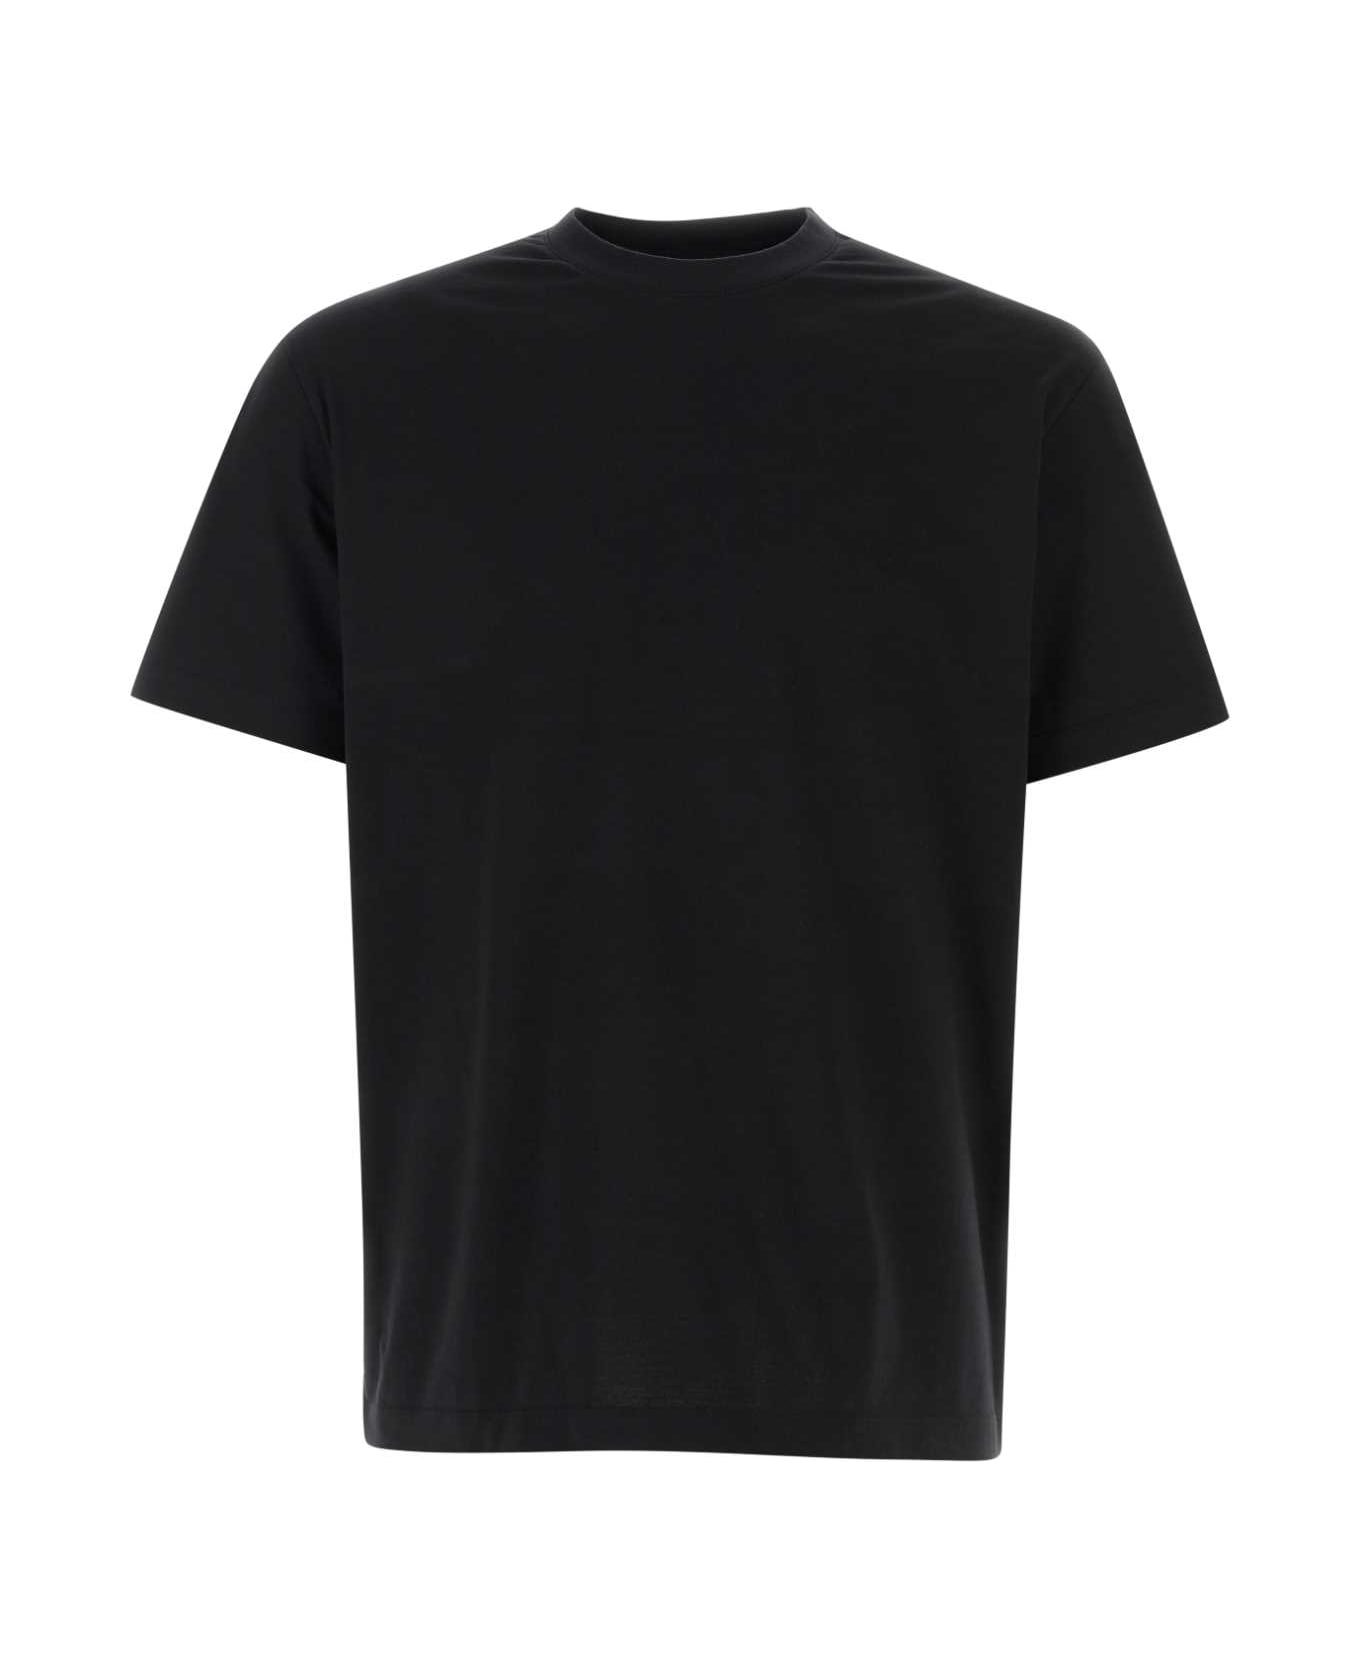 Y-3 Black Cotton T-shirt - BLACK シャツ